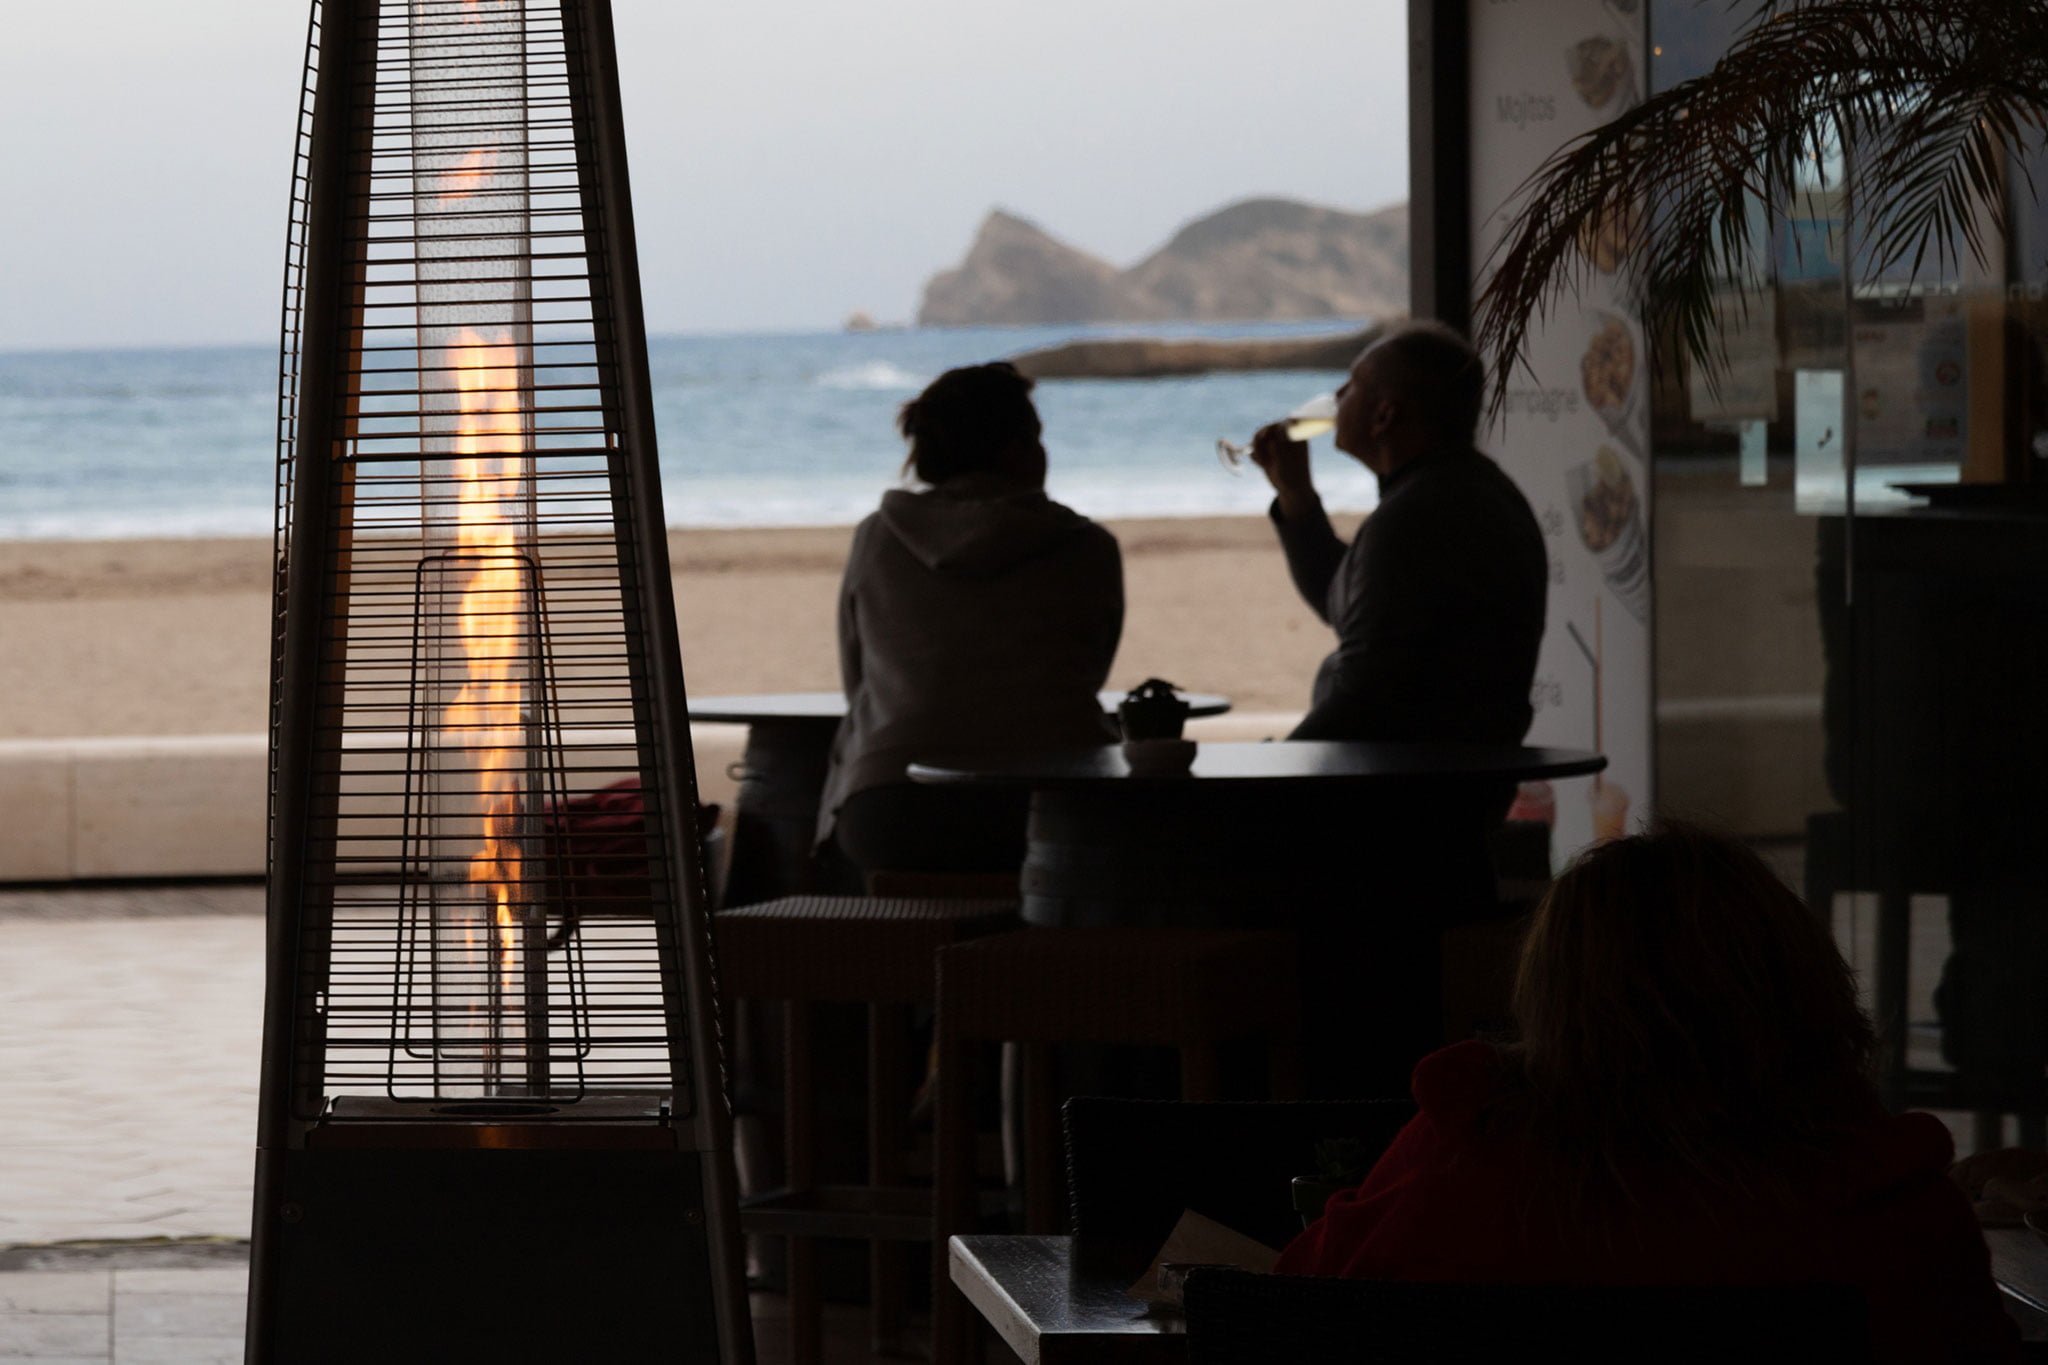 Tomar algo al lado del mar en invierno – Restaurante La Fontana